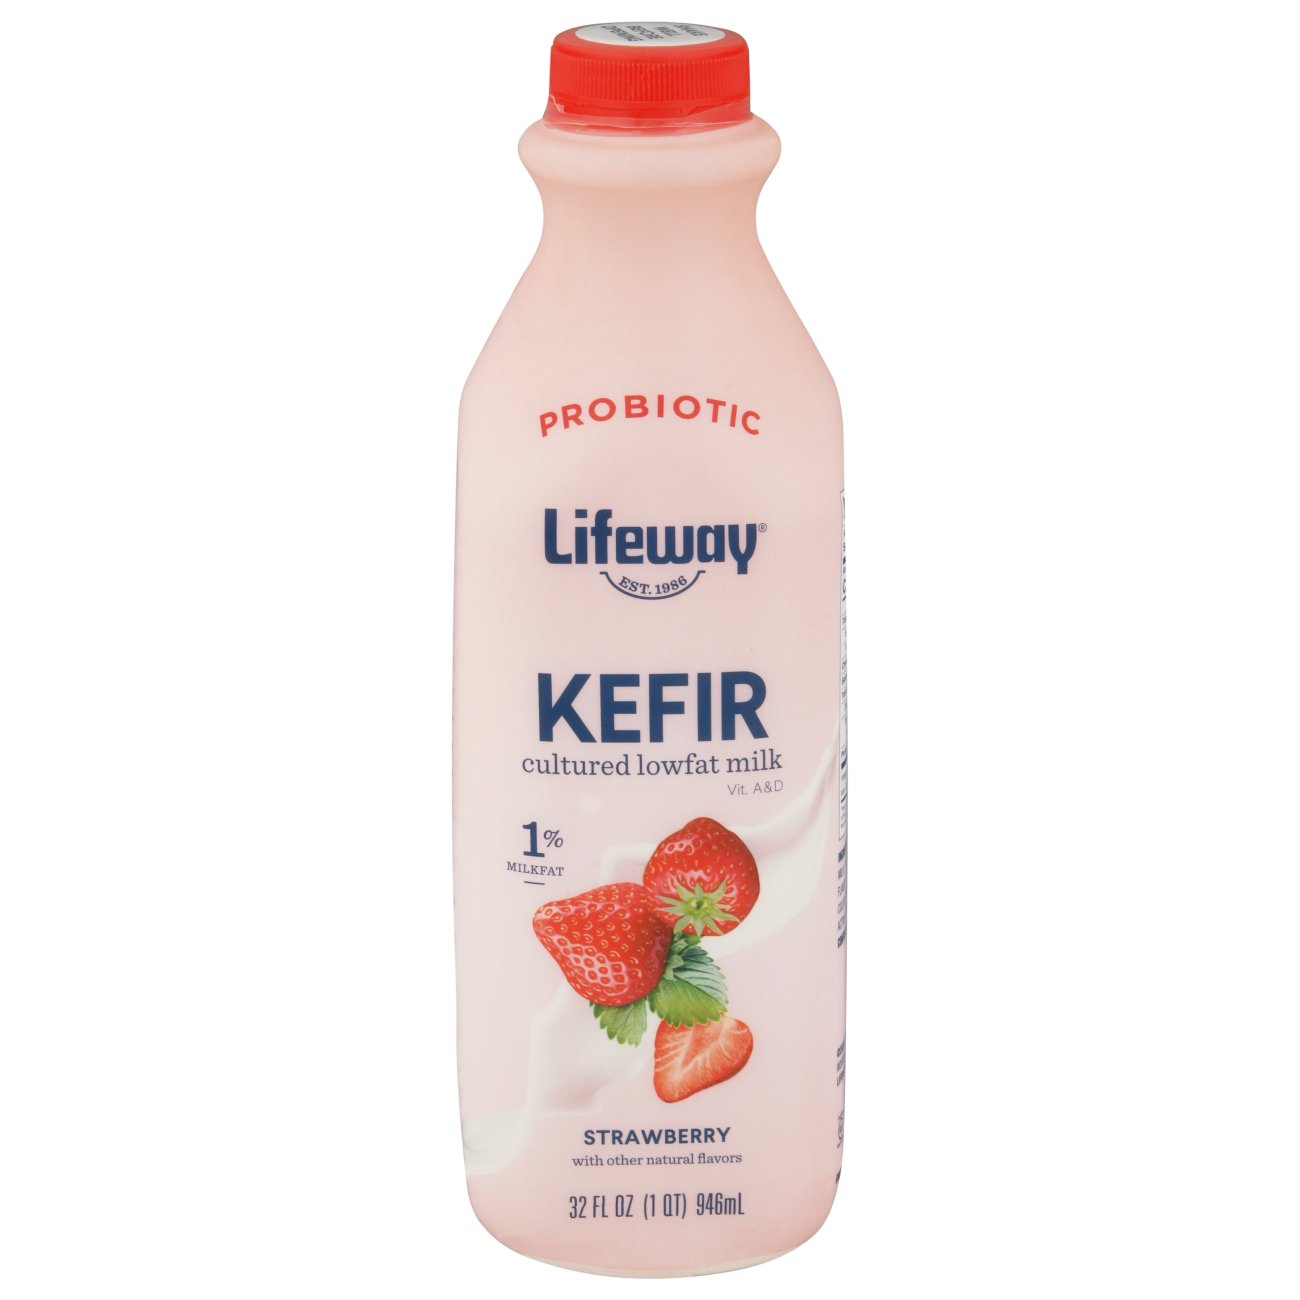 What is Kefir? - Yogurt in Nutrition